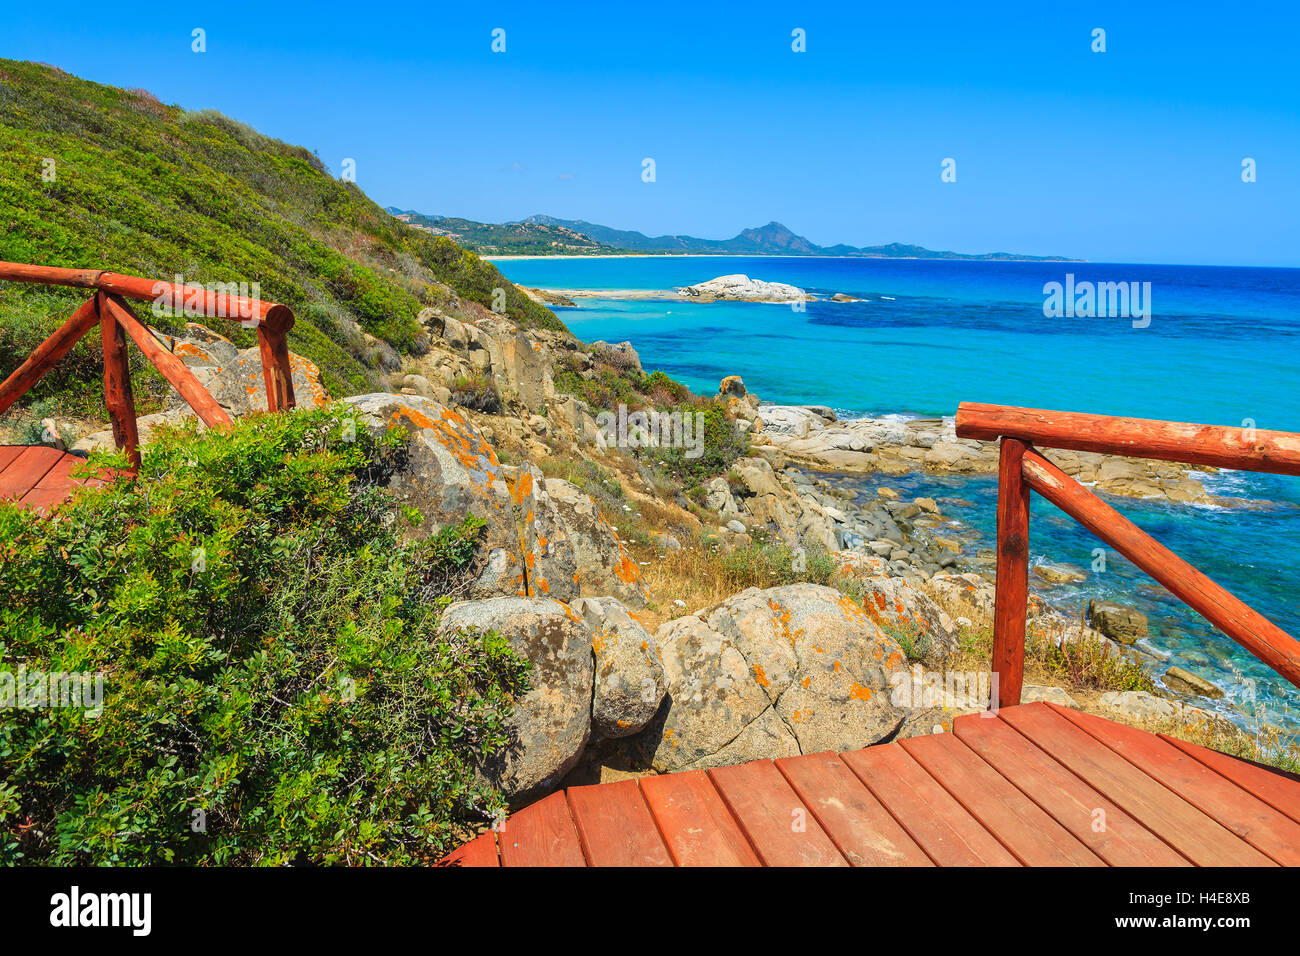 Rot aus Holz Sicht Plattform an der Bucht Cala Sinzias und Türkis Blick aufs Meer, Insel Sardinien, Italien Stockfoto